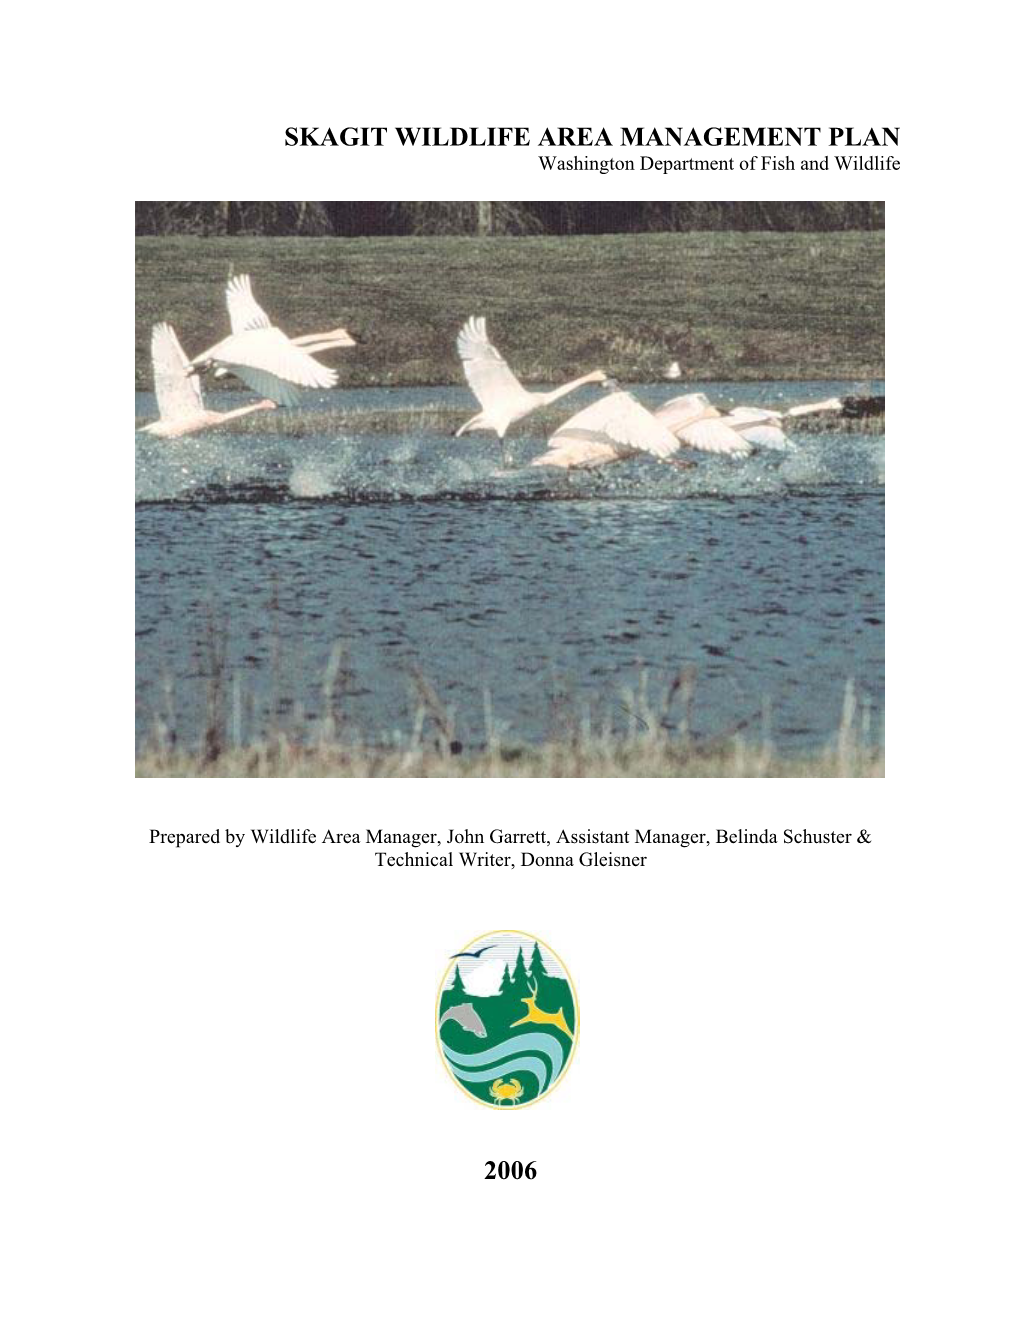 Skagit Wildlife Area Management Plan 2006